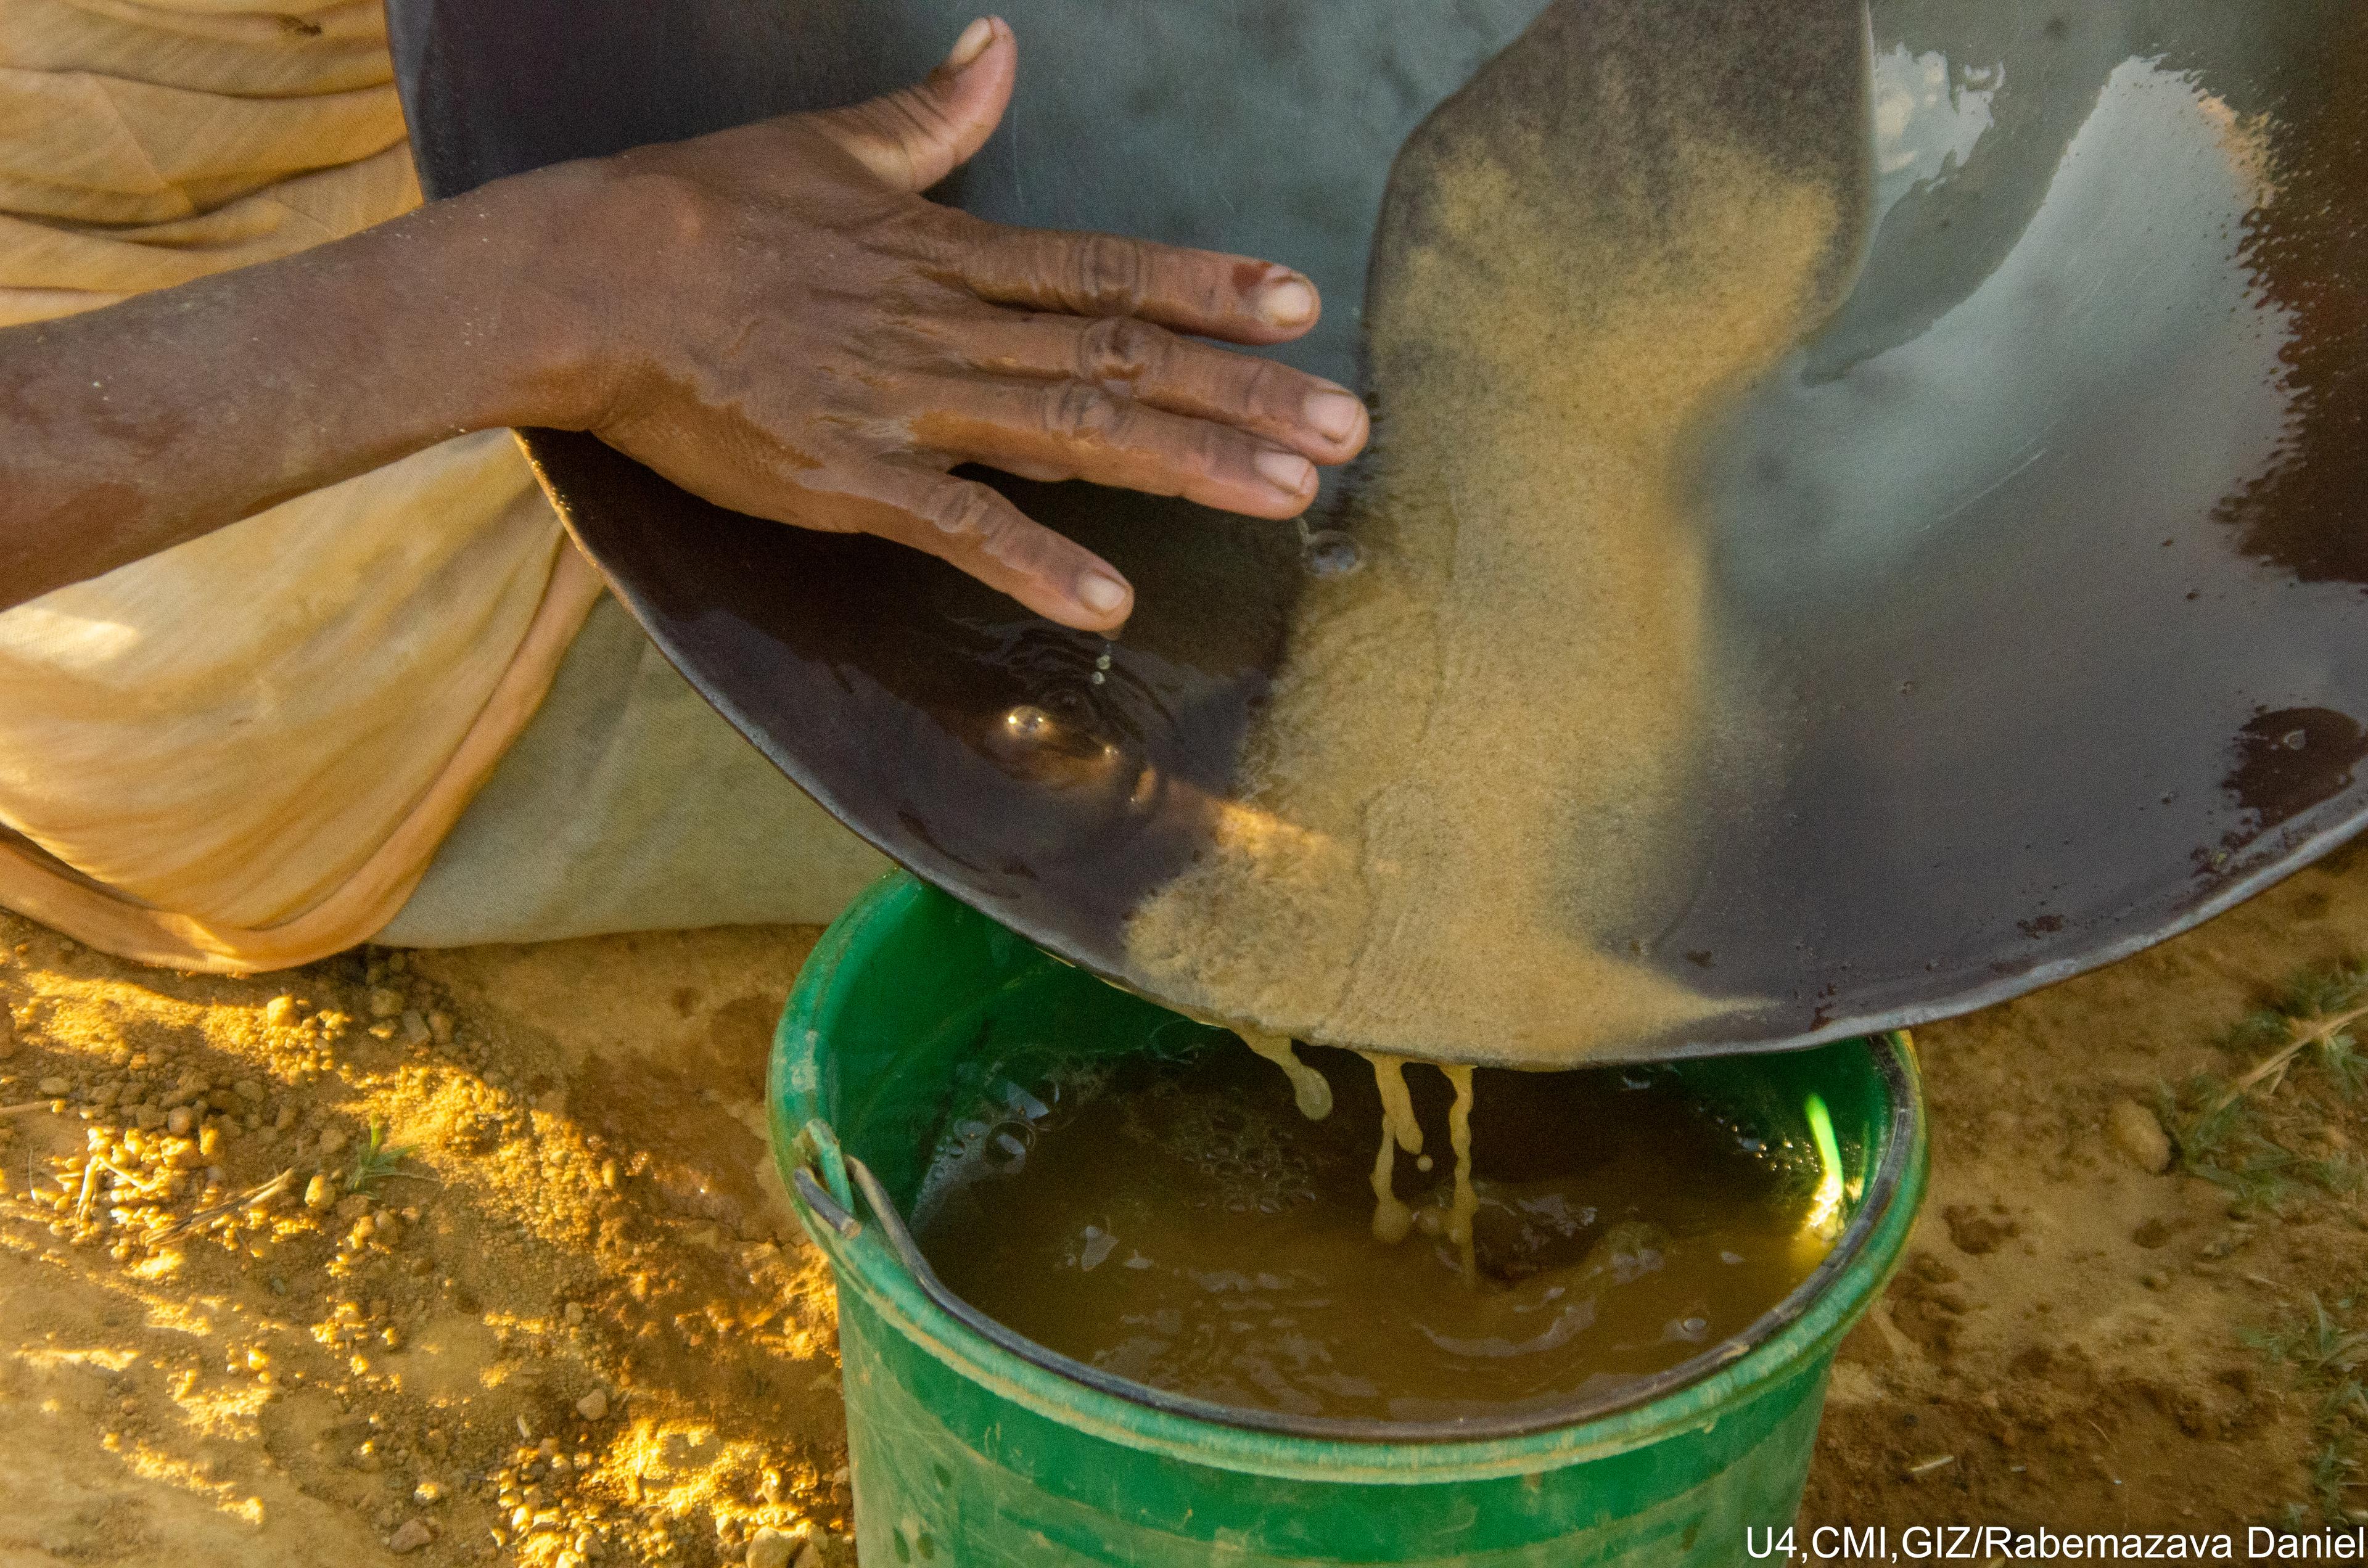 Le secteur de l’or à Madagascar : au cœur des pratiques illicites